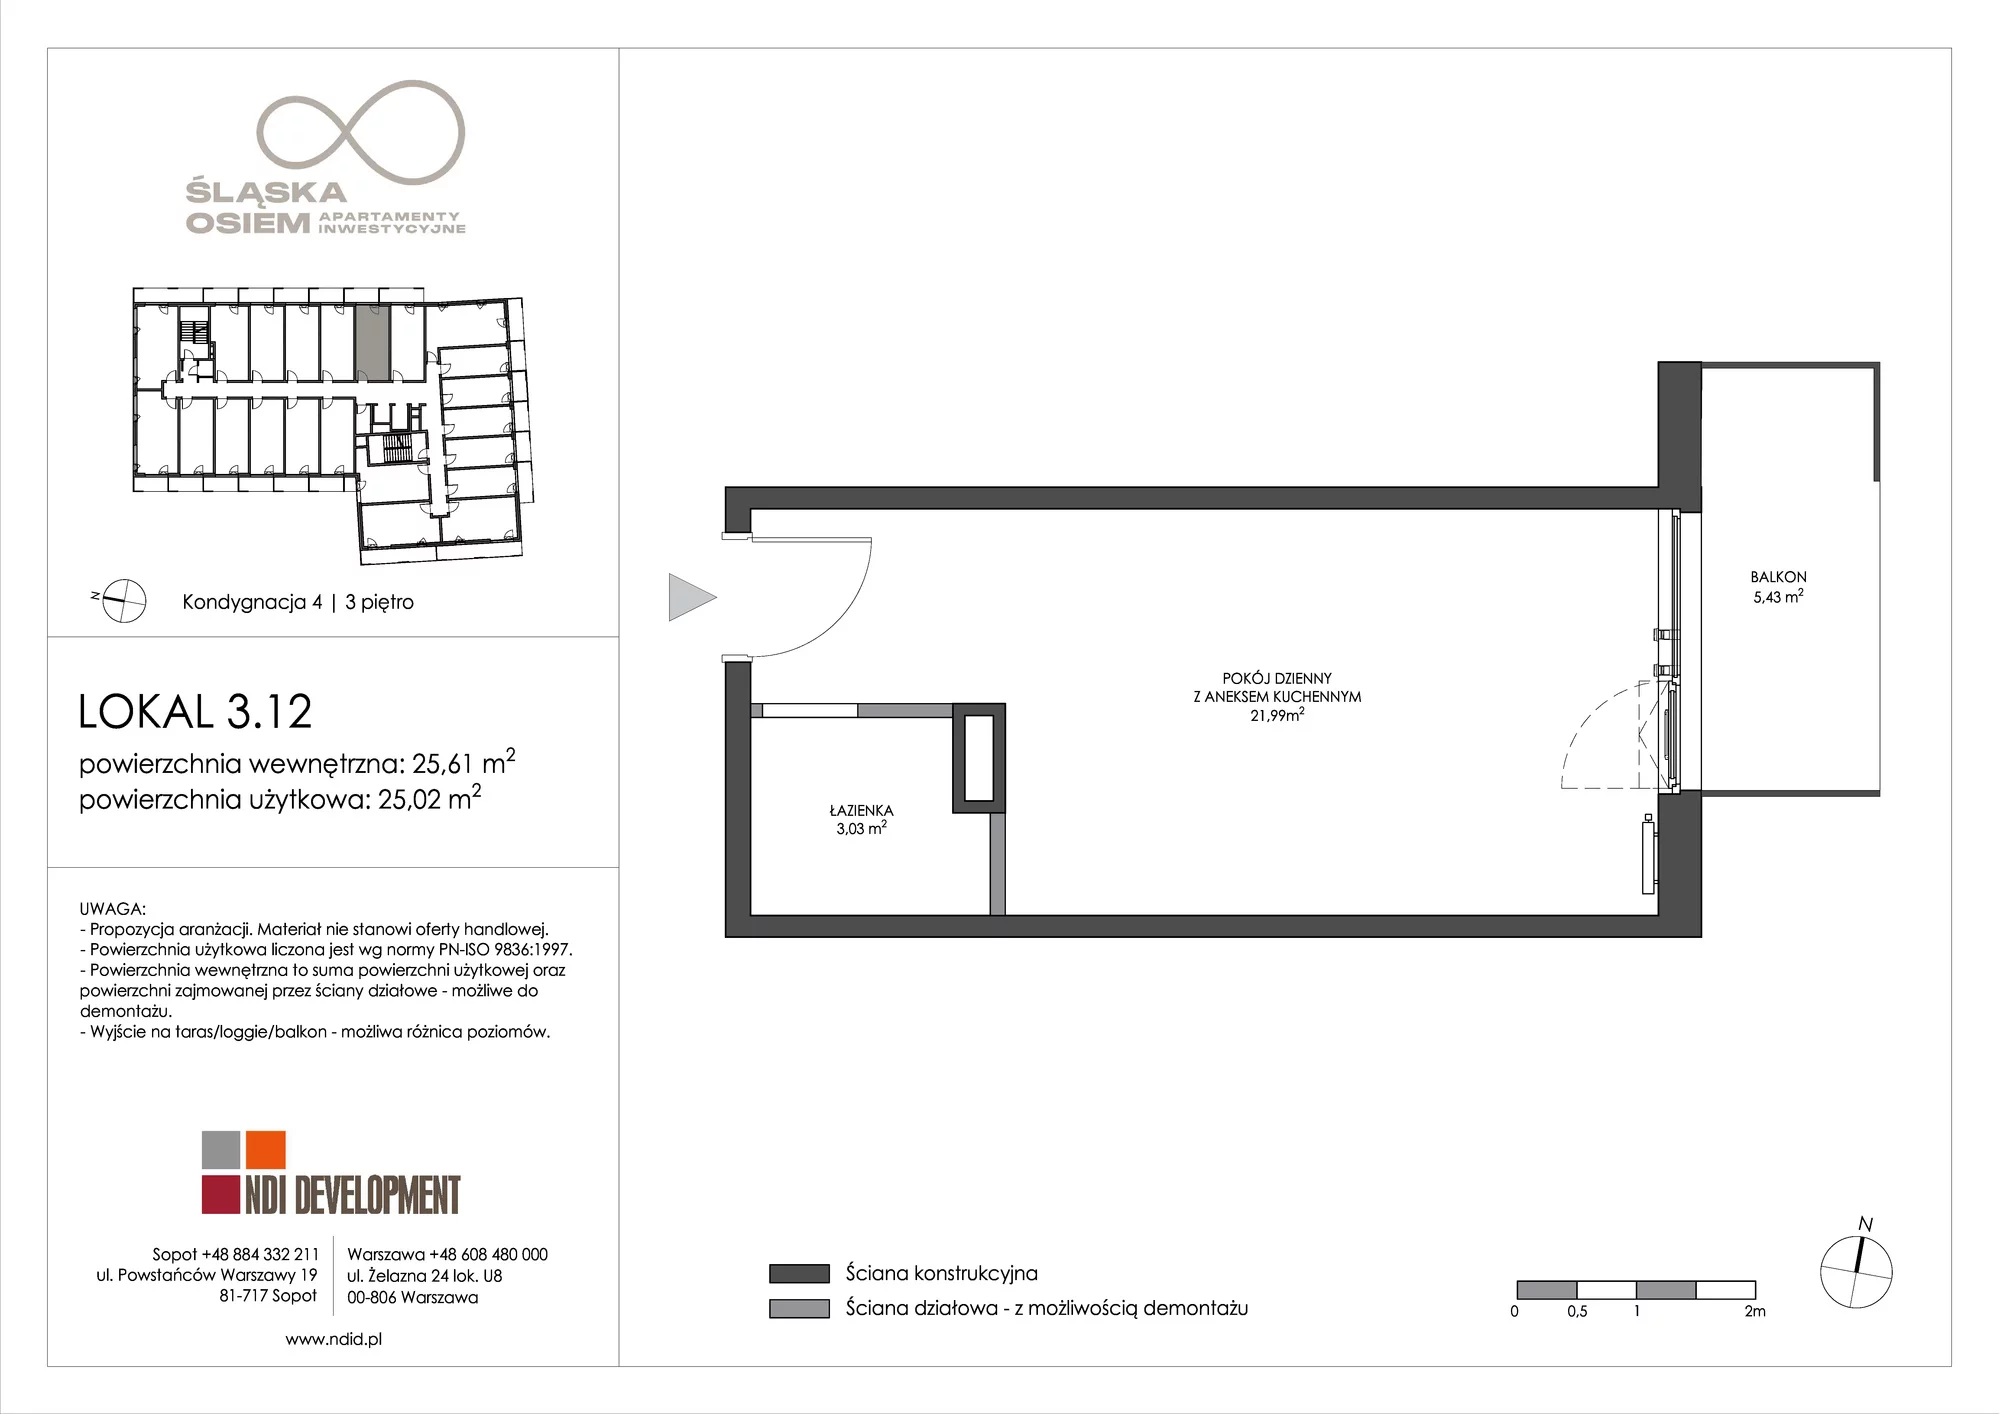 Apartament inwestycyjny 25,61 m², piętro 3, oferta nr 3.12, Śląska Osiem, Gdańsk, Przymorze, ul. Śląska 8